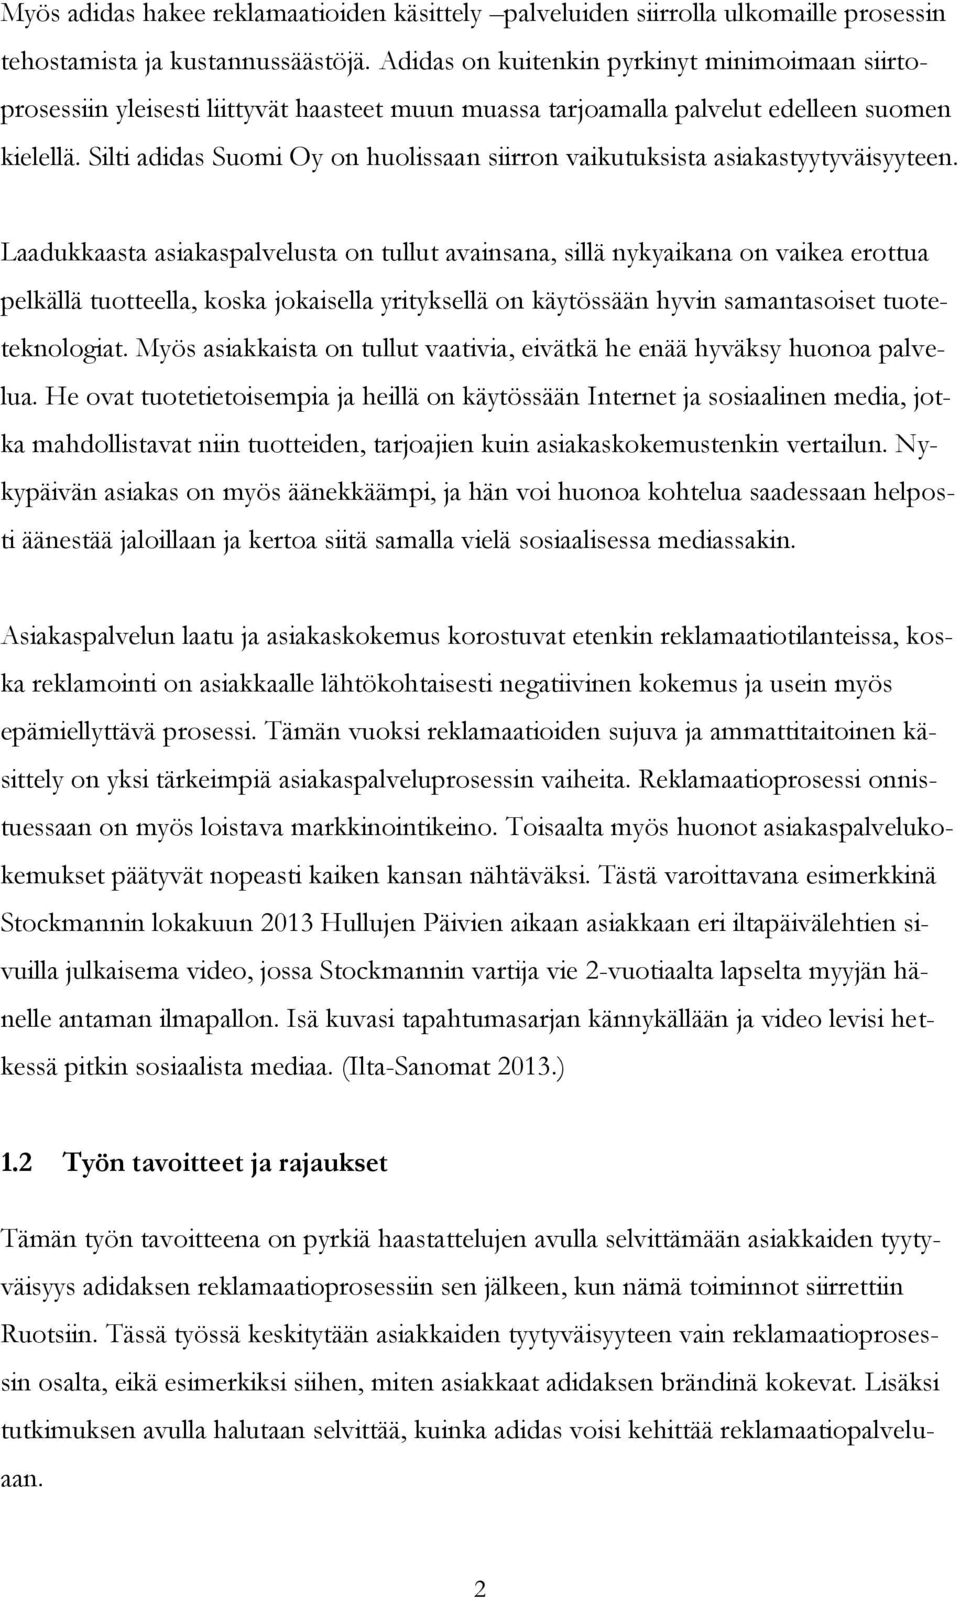 Adidas Suomi Oy: Reklamaatioiden käsittelyn ulkomaille siirron vaikutukset  asiakastyytyväisyyteen. Miia Lauronen - PDF Ilmainen lataus